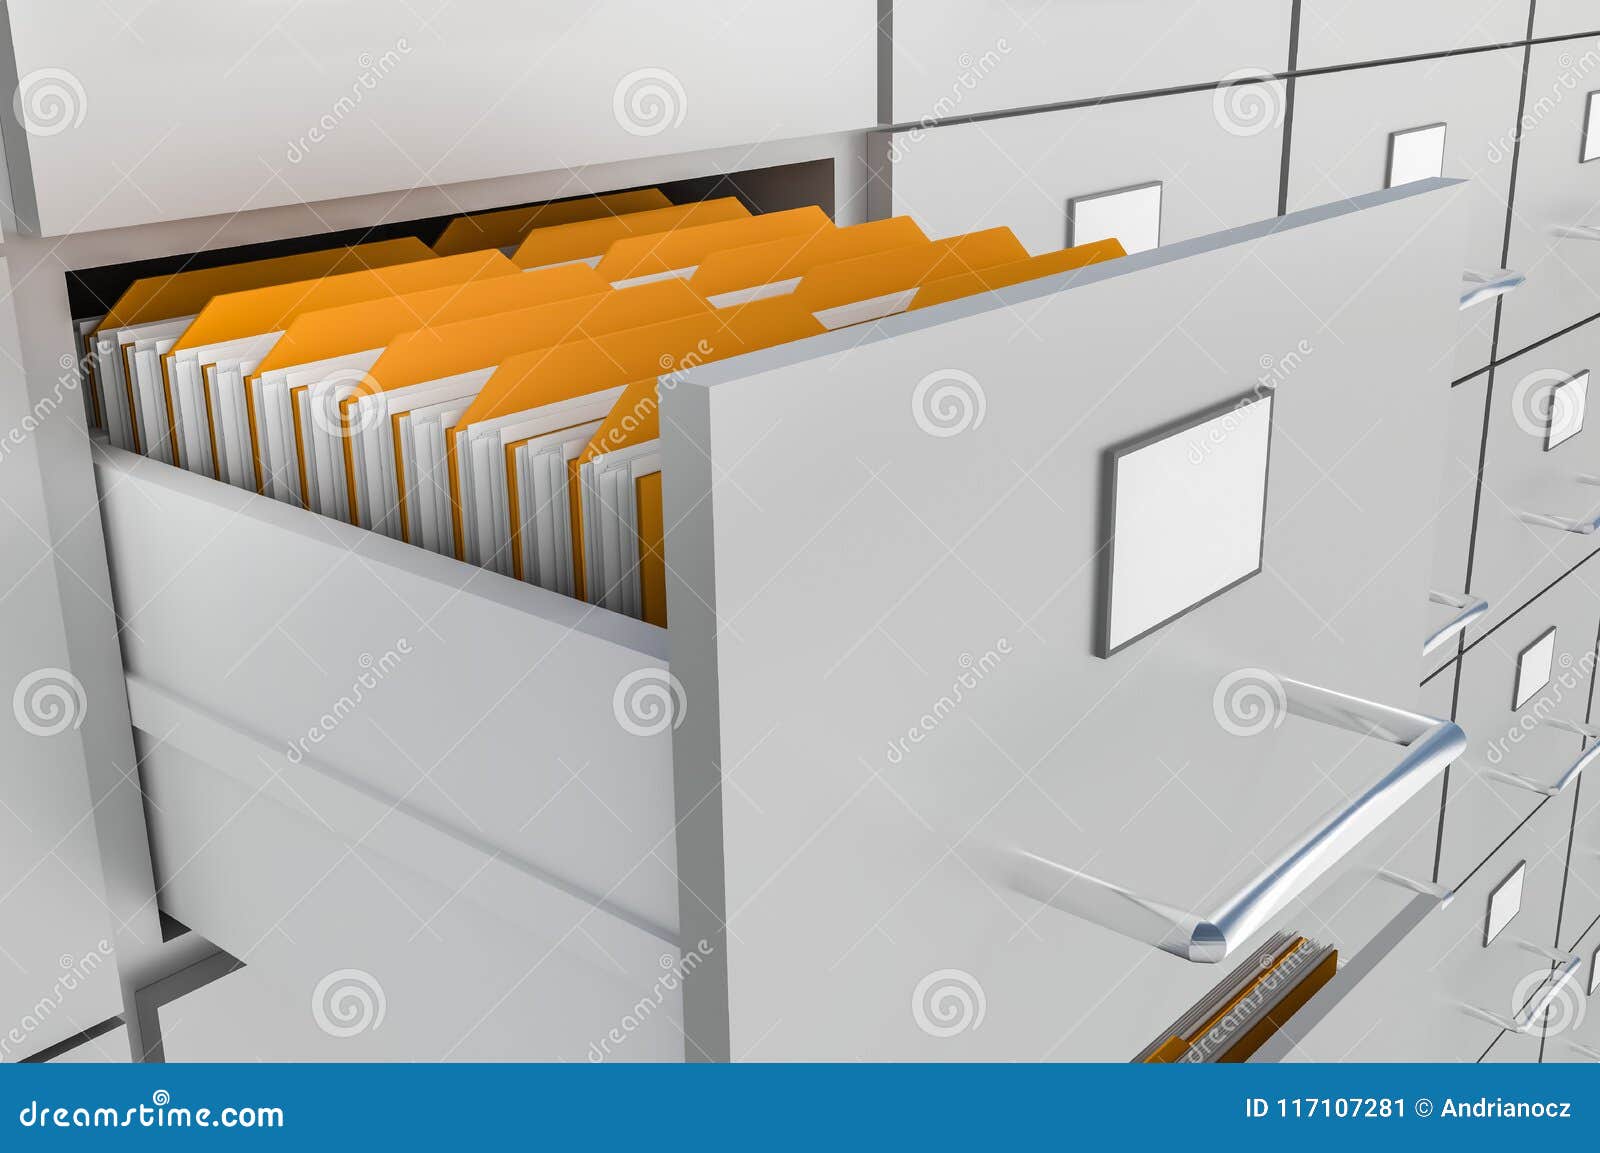 Ouvrez Le Tiroir De Meuble D'archivage Avec Des Documents à L'intérieur  Illustration Stock - Illustration du tiroirs, dépliant: 117107281